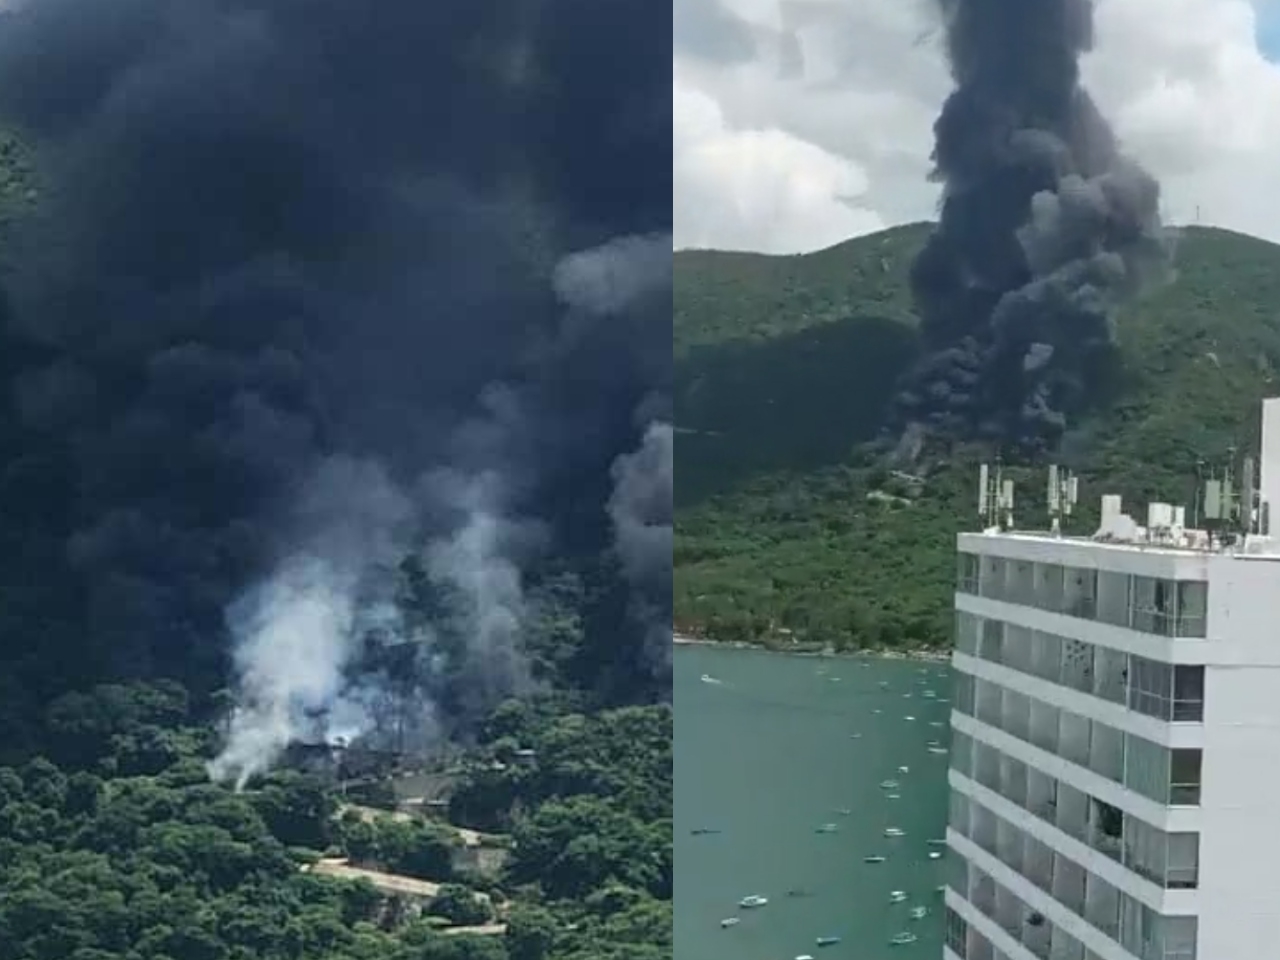 La columna de fuego fue vista en diversas zonas cercanas a la explosión en Acapulco, mientras se sofocaba el fuego